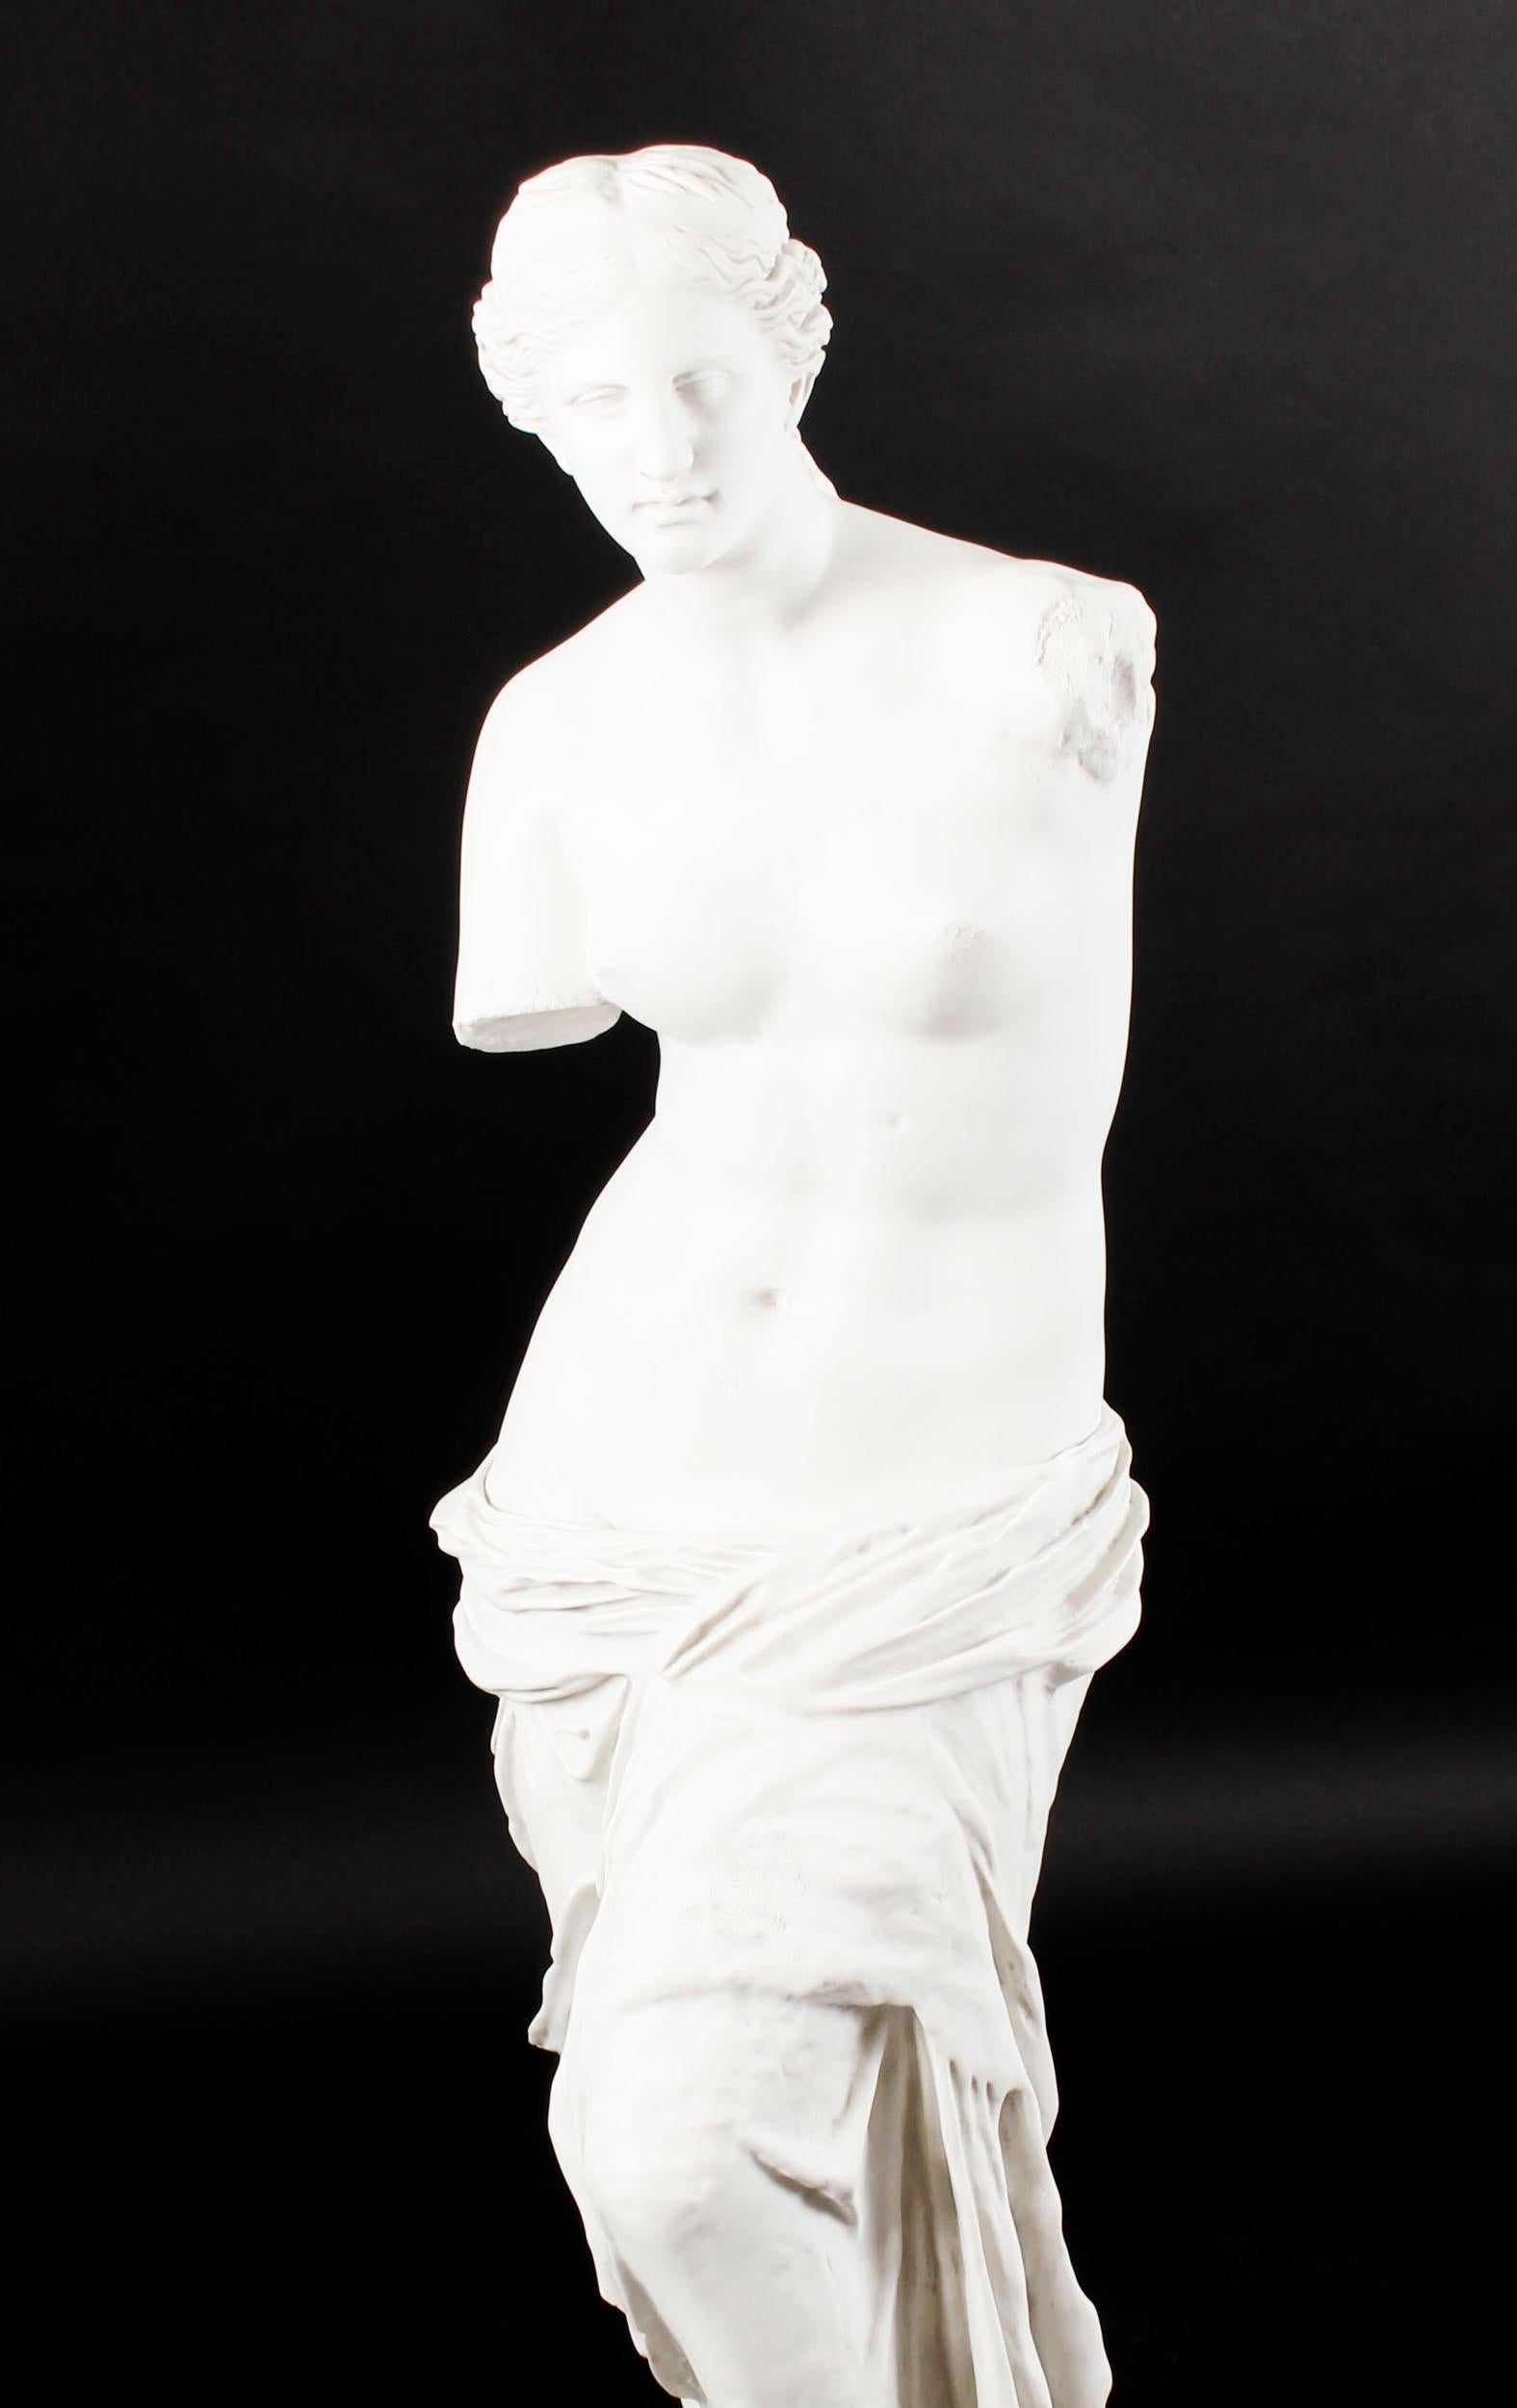 Es handelt sich um eine hervorragend gearbeitete Marmorstatue der berühmten antiken griechischen Statue Venus de Milo aus dem späten 20. Jahrhundert. 

Wie in der Originalskulptur von Alexandros von Antiochia verkörpert die Göttin der Schönheit